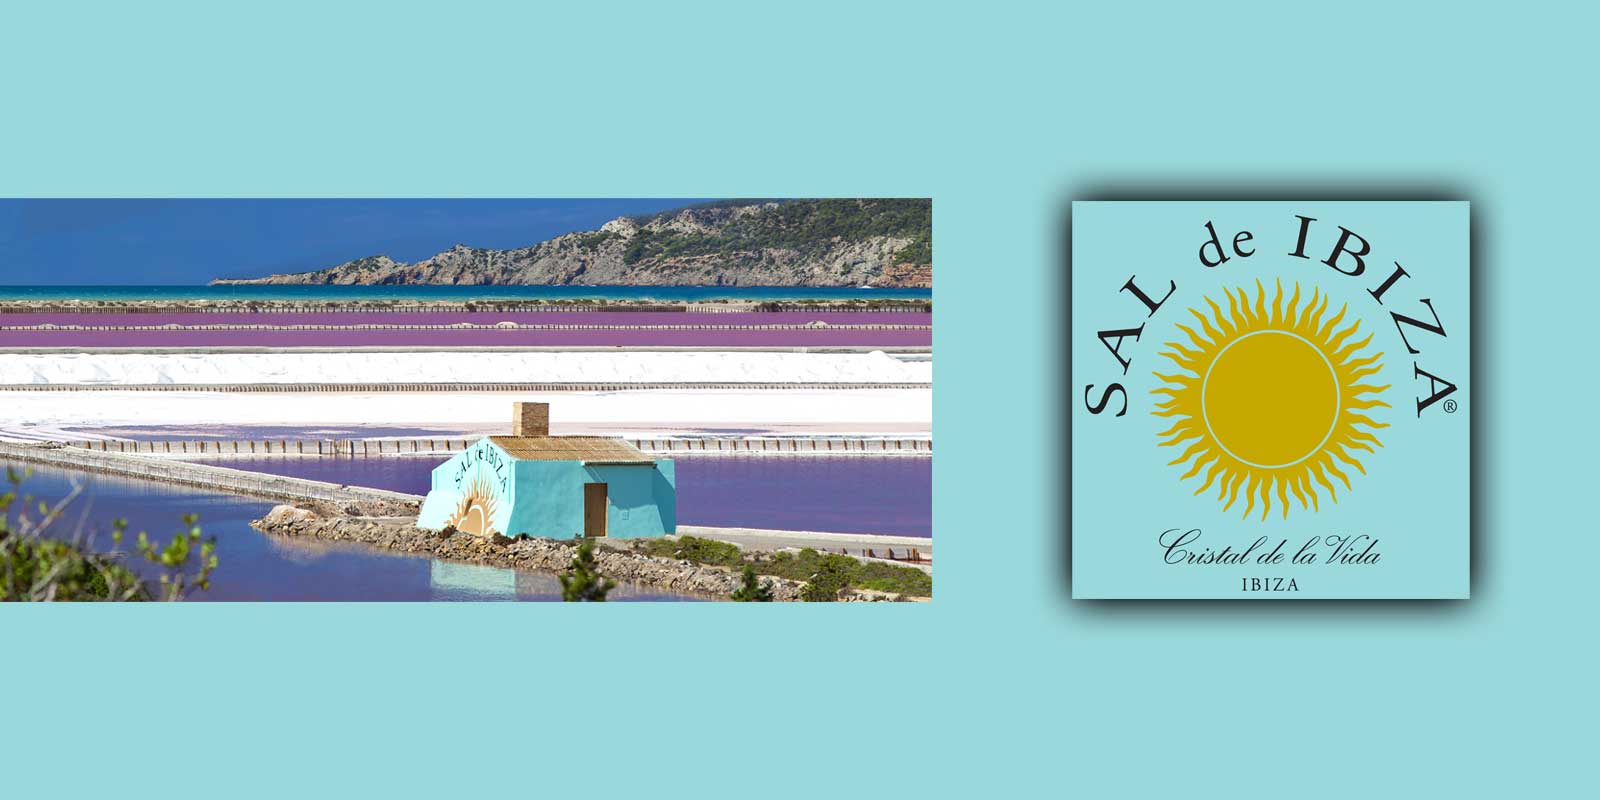 SAL de IBIZA Fleur de Sel sa ziskava v prirodnych rezervaciach solnych bani na Ibize. Male, krehke krystaly vznikaju len vtedy, ked je vela slnka, nizka vlhkost a staly vietor.